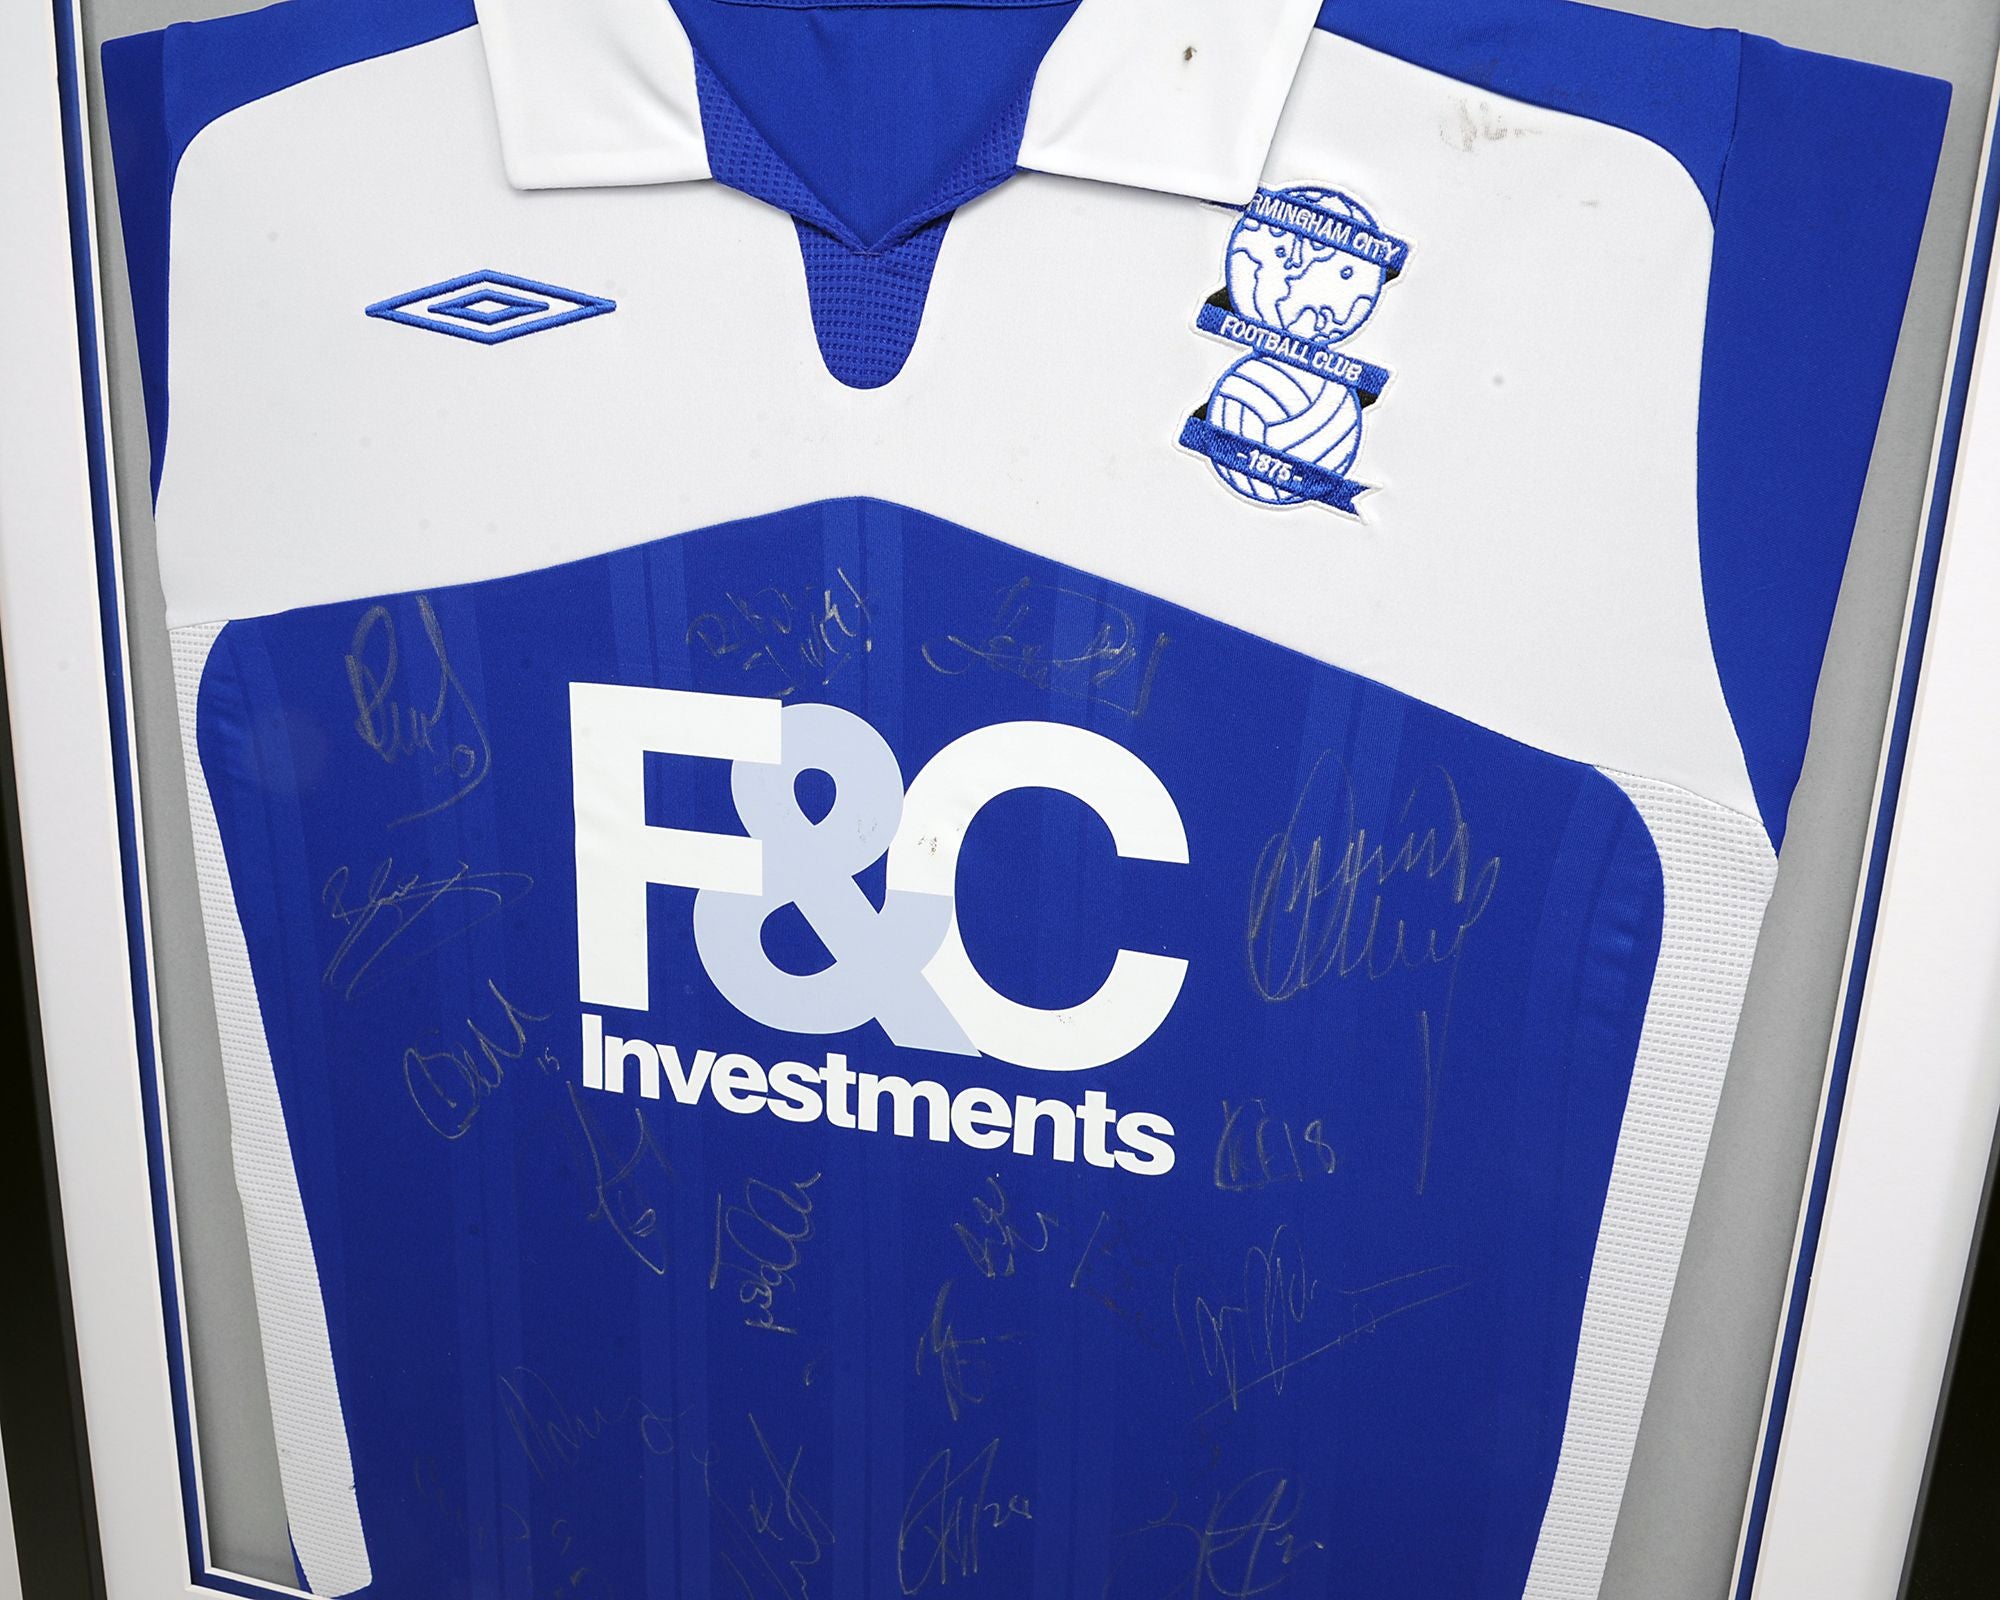 Birmingham City Squad Signed 2009/2010 Framed Shirt - Note - Mark on left shoulder / collar